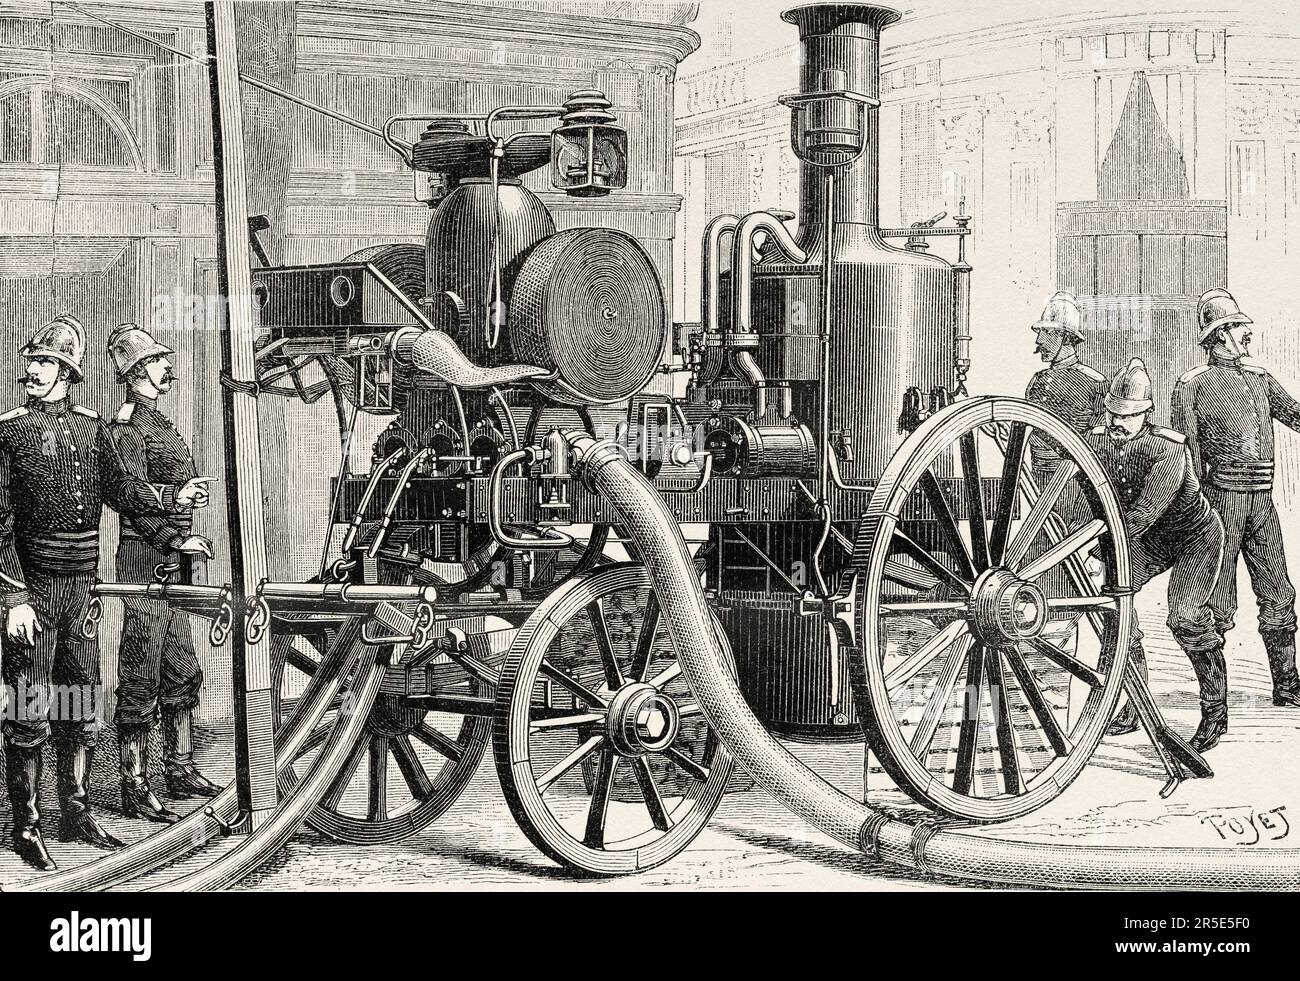 Matériel de brigade des pompiers de Paris, Thirion system pompe à incendie à vapeur, France. Ancienne gravure du 19th siècle de la nature 1887 Banque D'Images